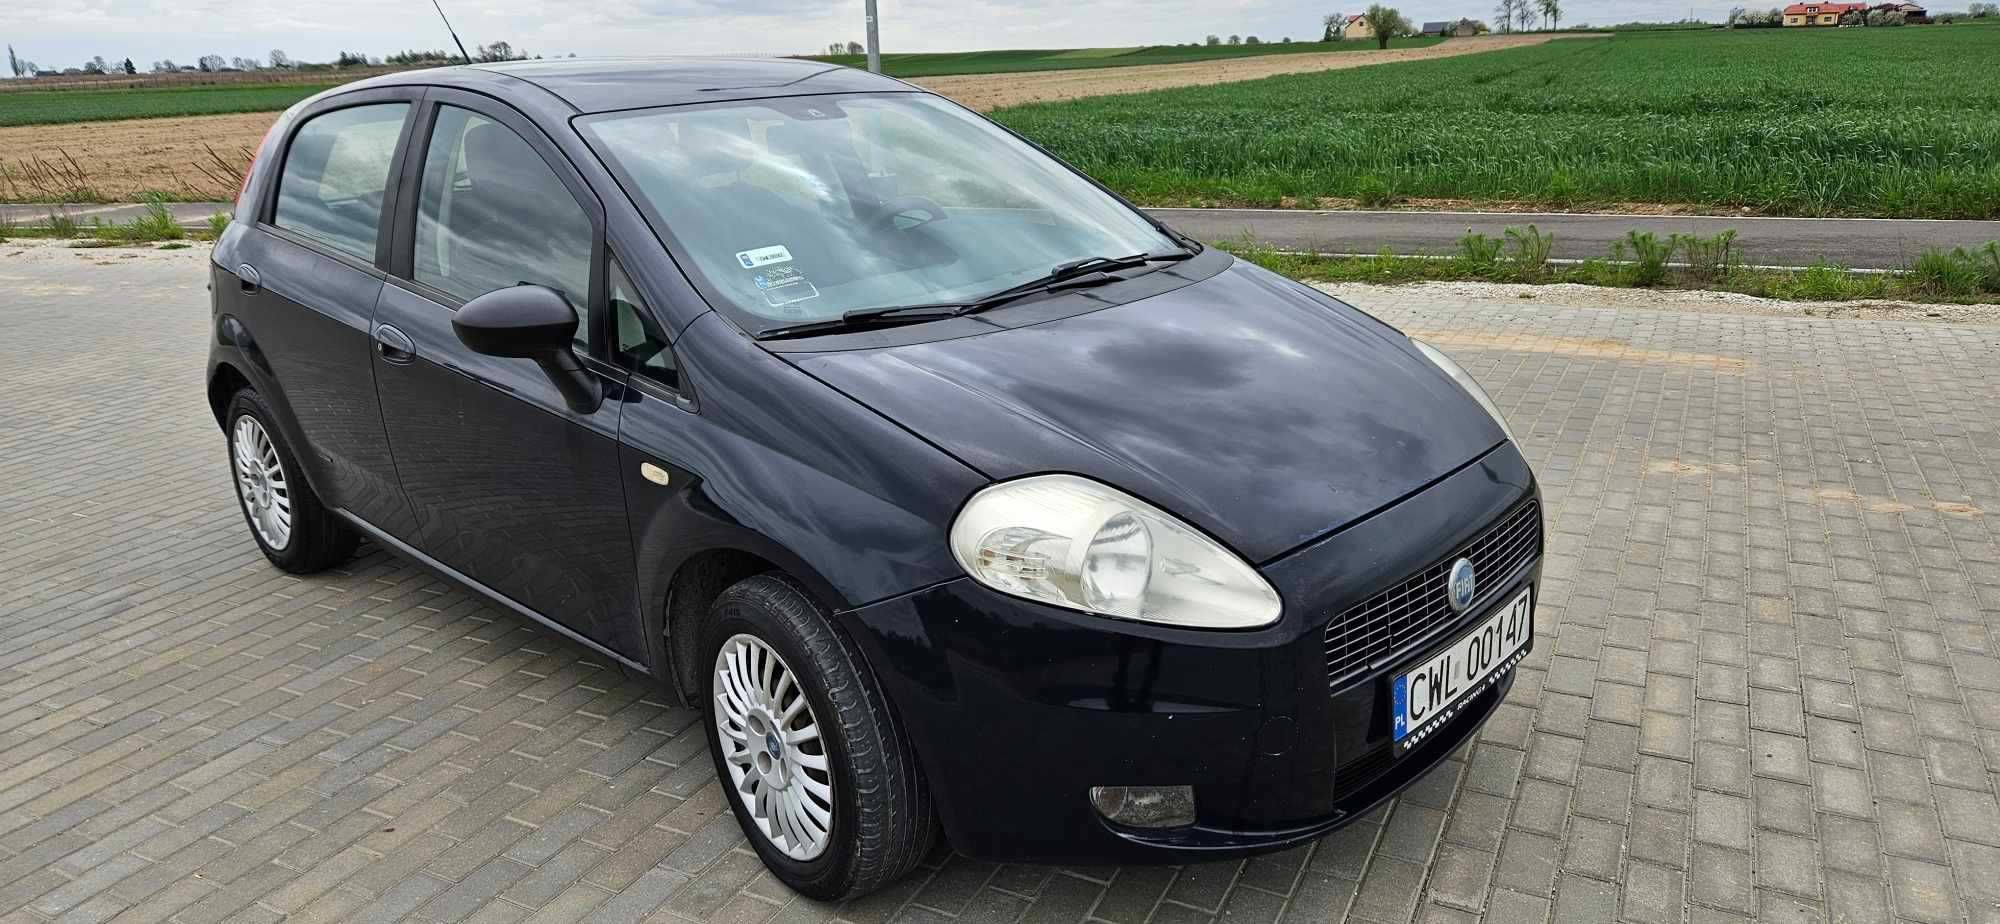 SPRZEDAŻ LUB ZAMIANA Fiat Punto 1.4+gaz 2007